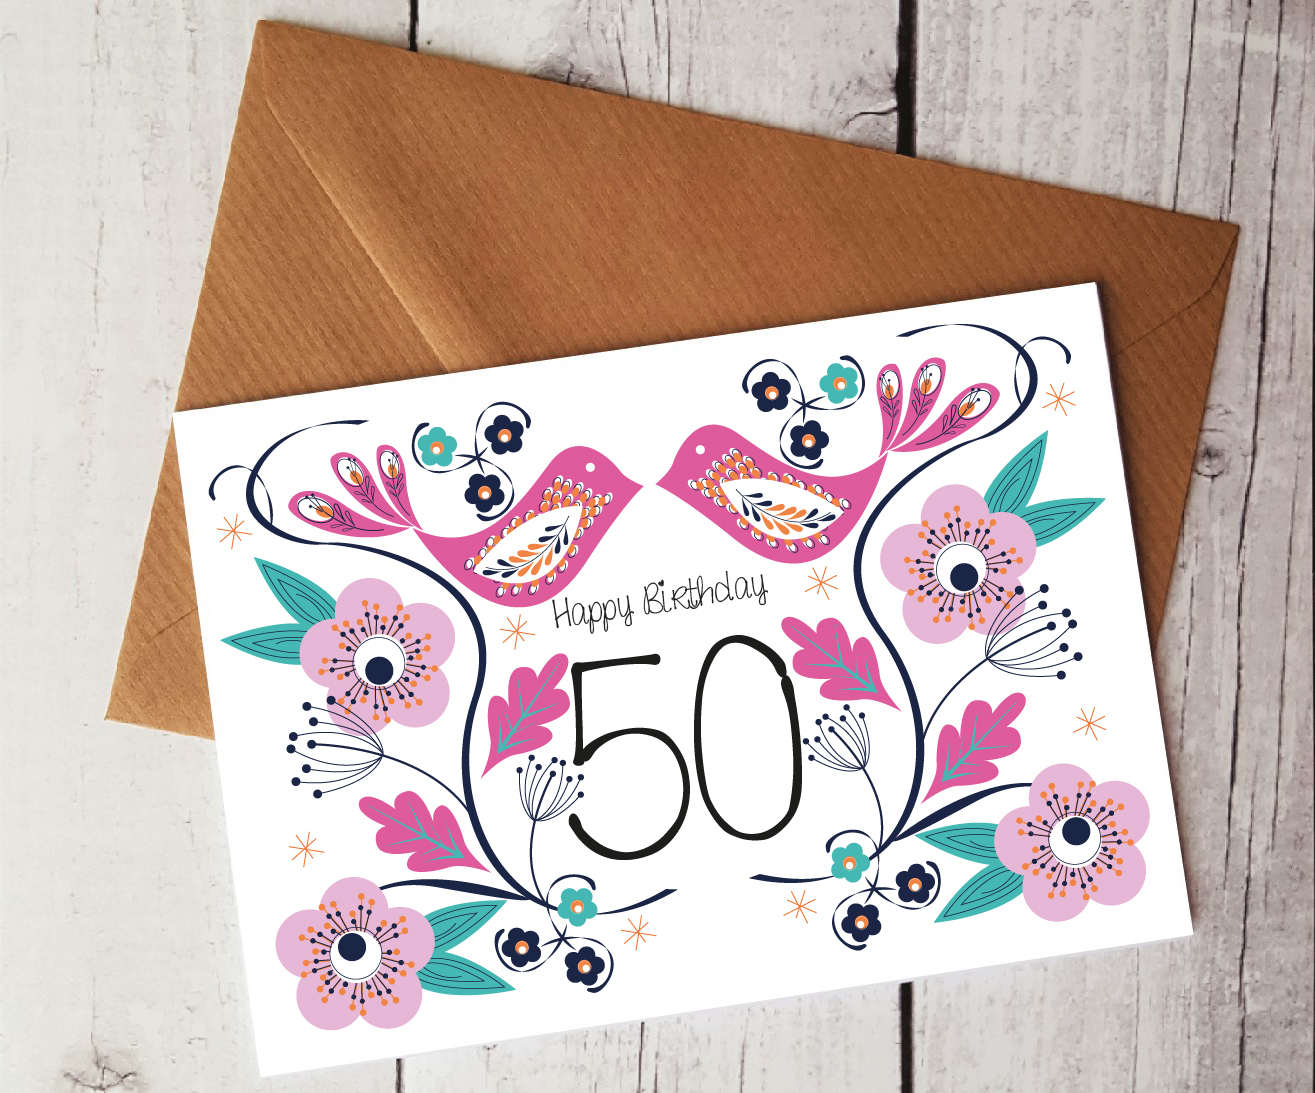 50Th Birthday Card Ideas 50th Birthday Card